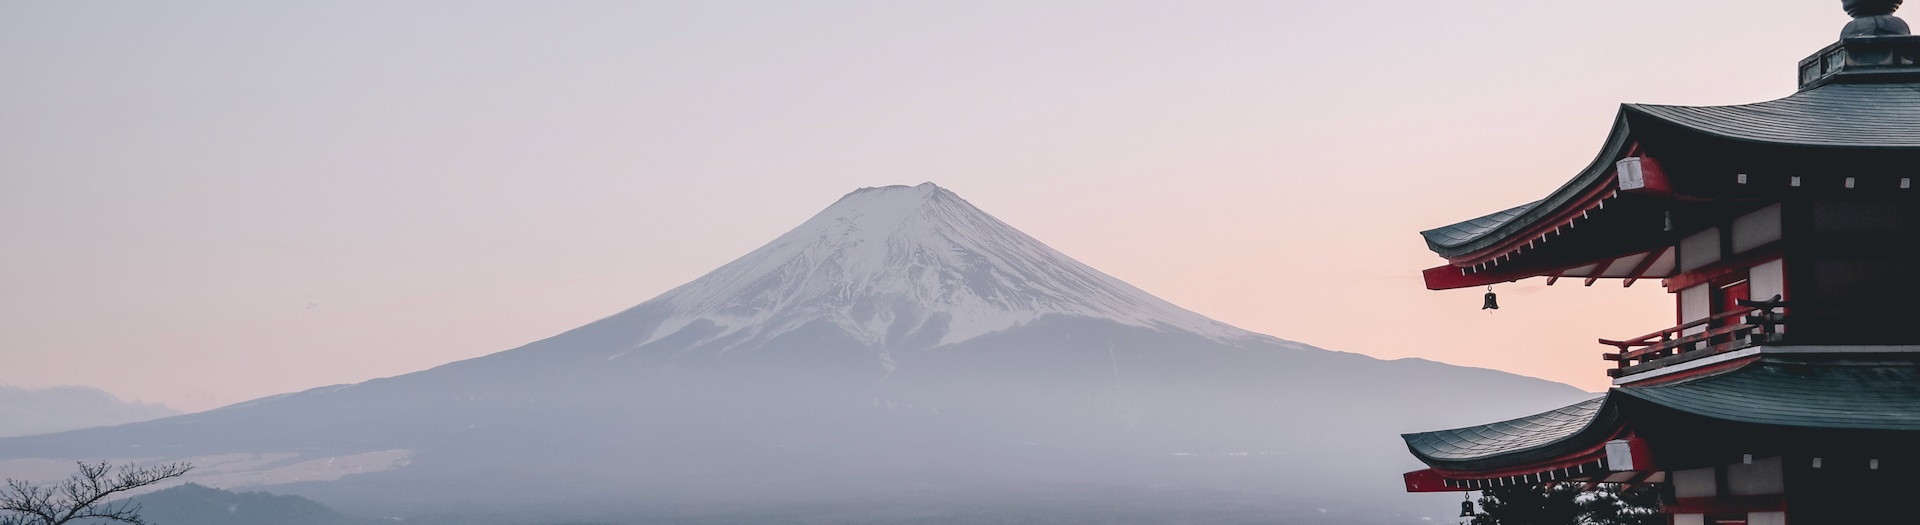 Ski touring Mount Fuji San